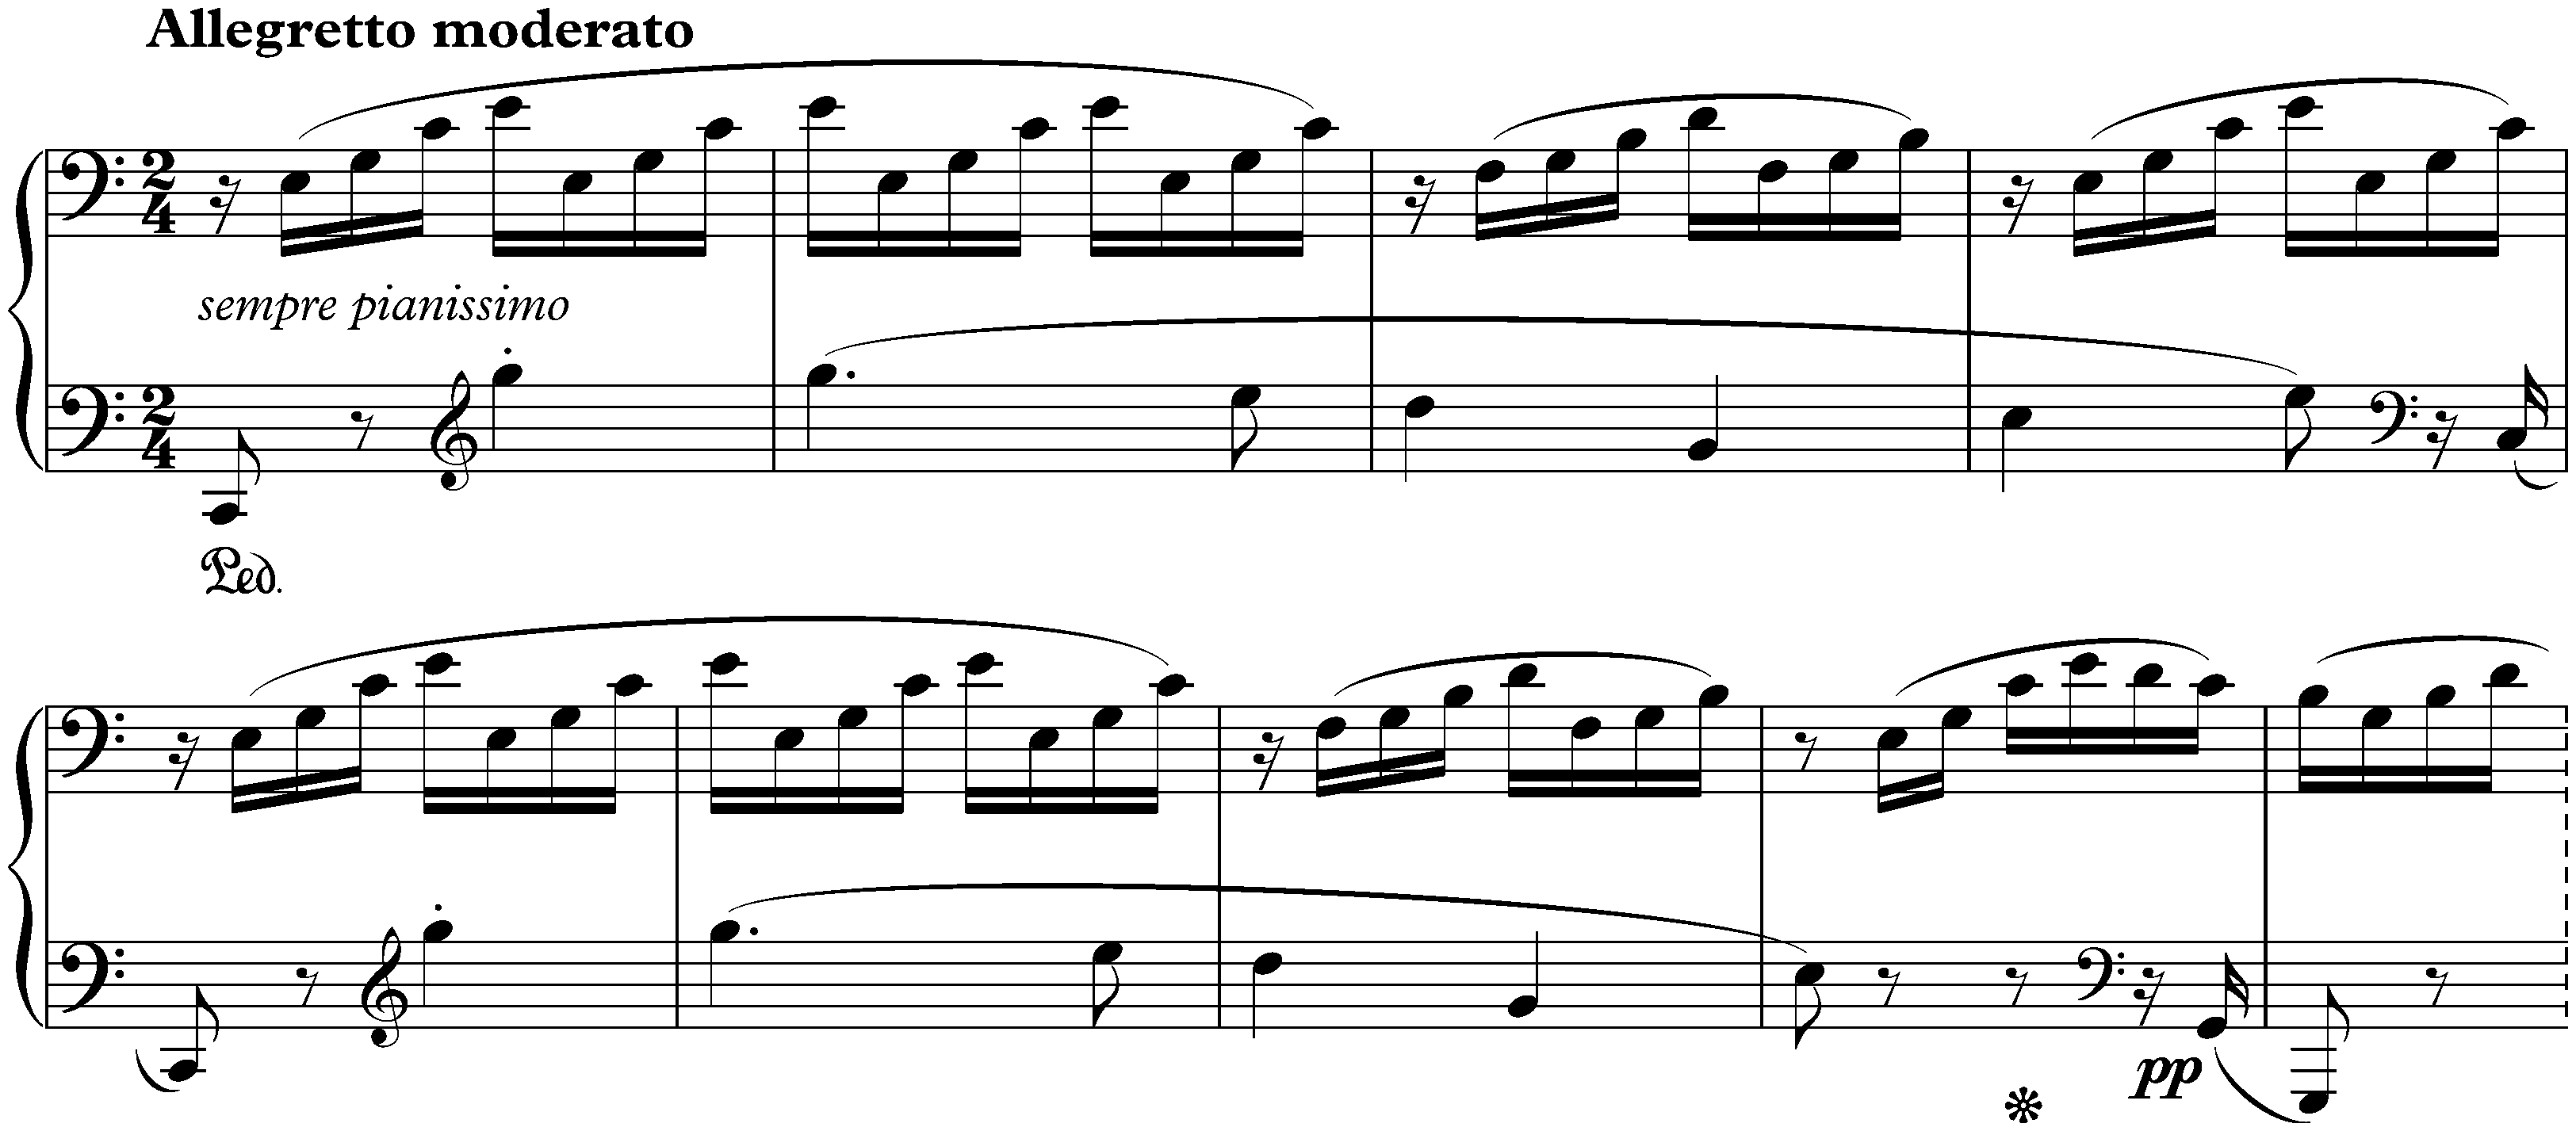 Sonata no. 21 in C major, op. 53 (Waldstein); 3. Rondo: Allegretto moderato – Prestissimo